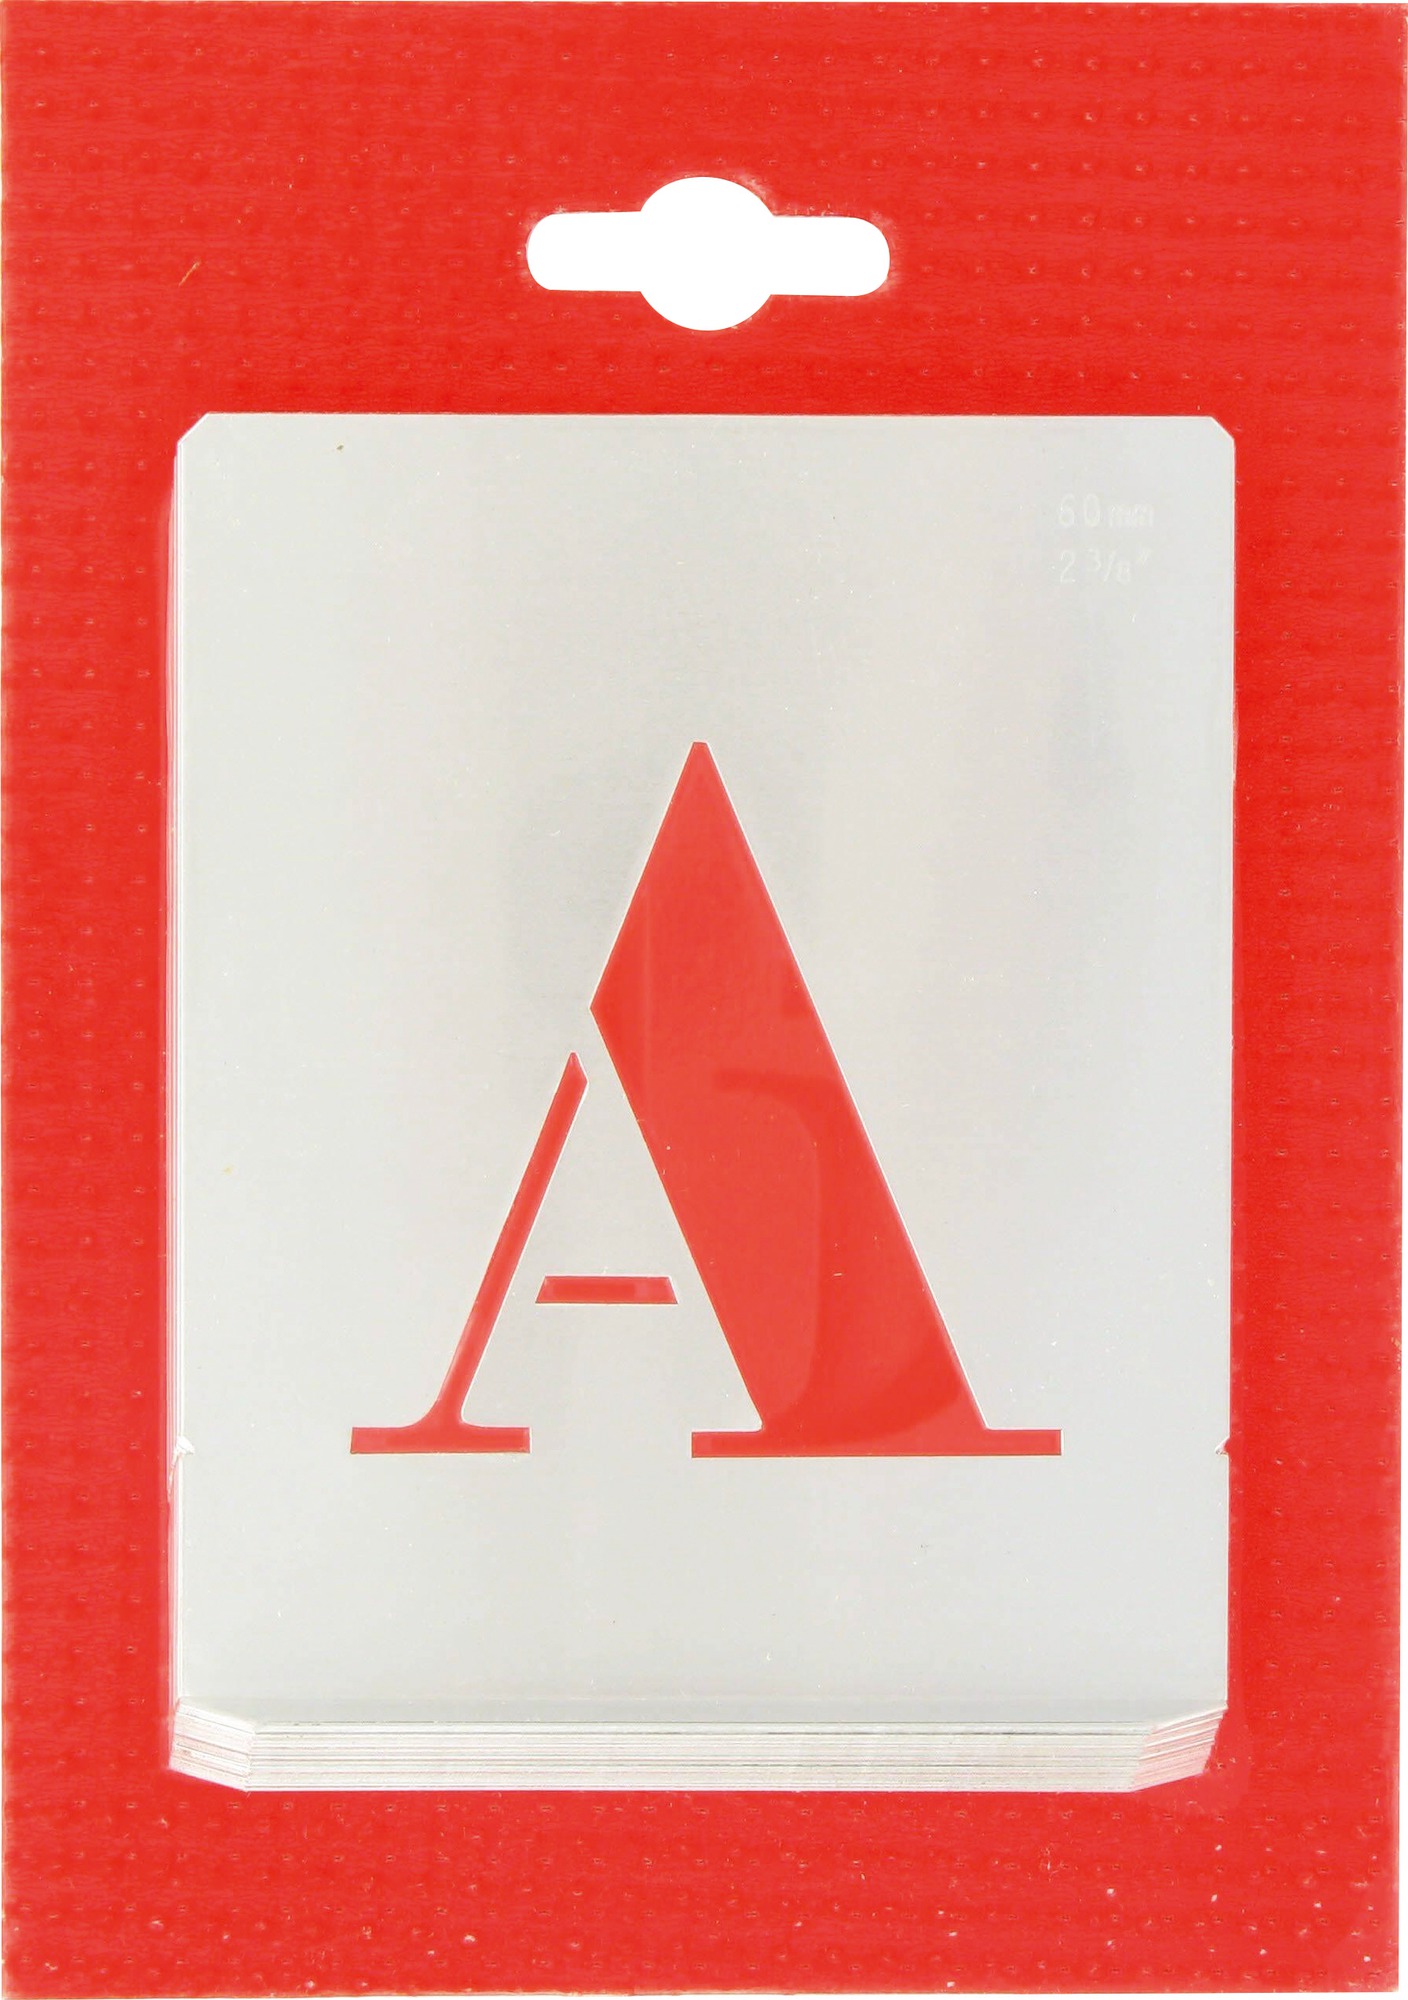 Jeu de lettres pochoirs alphabet aluminium ajouré Uny - Dimensions 60 mm